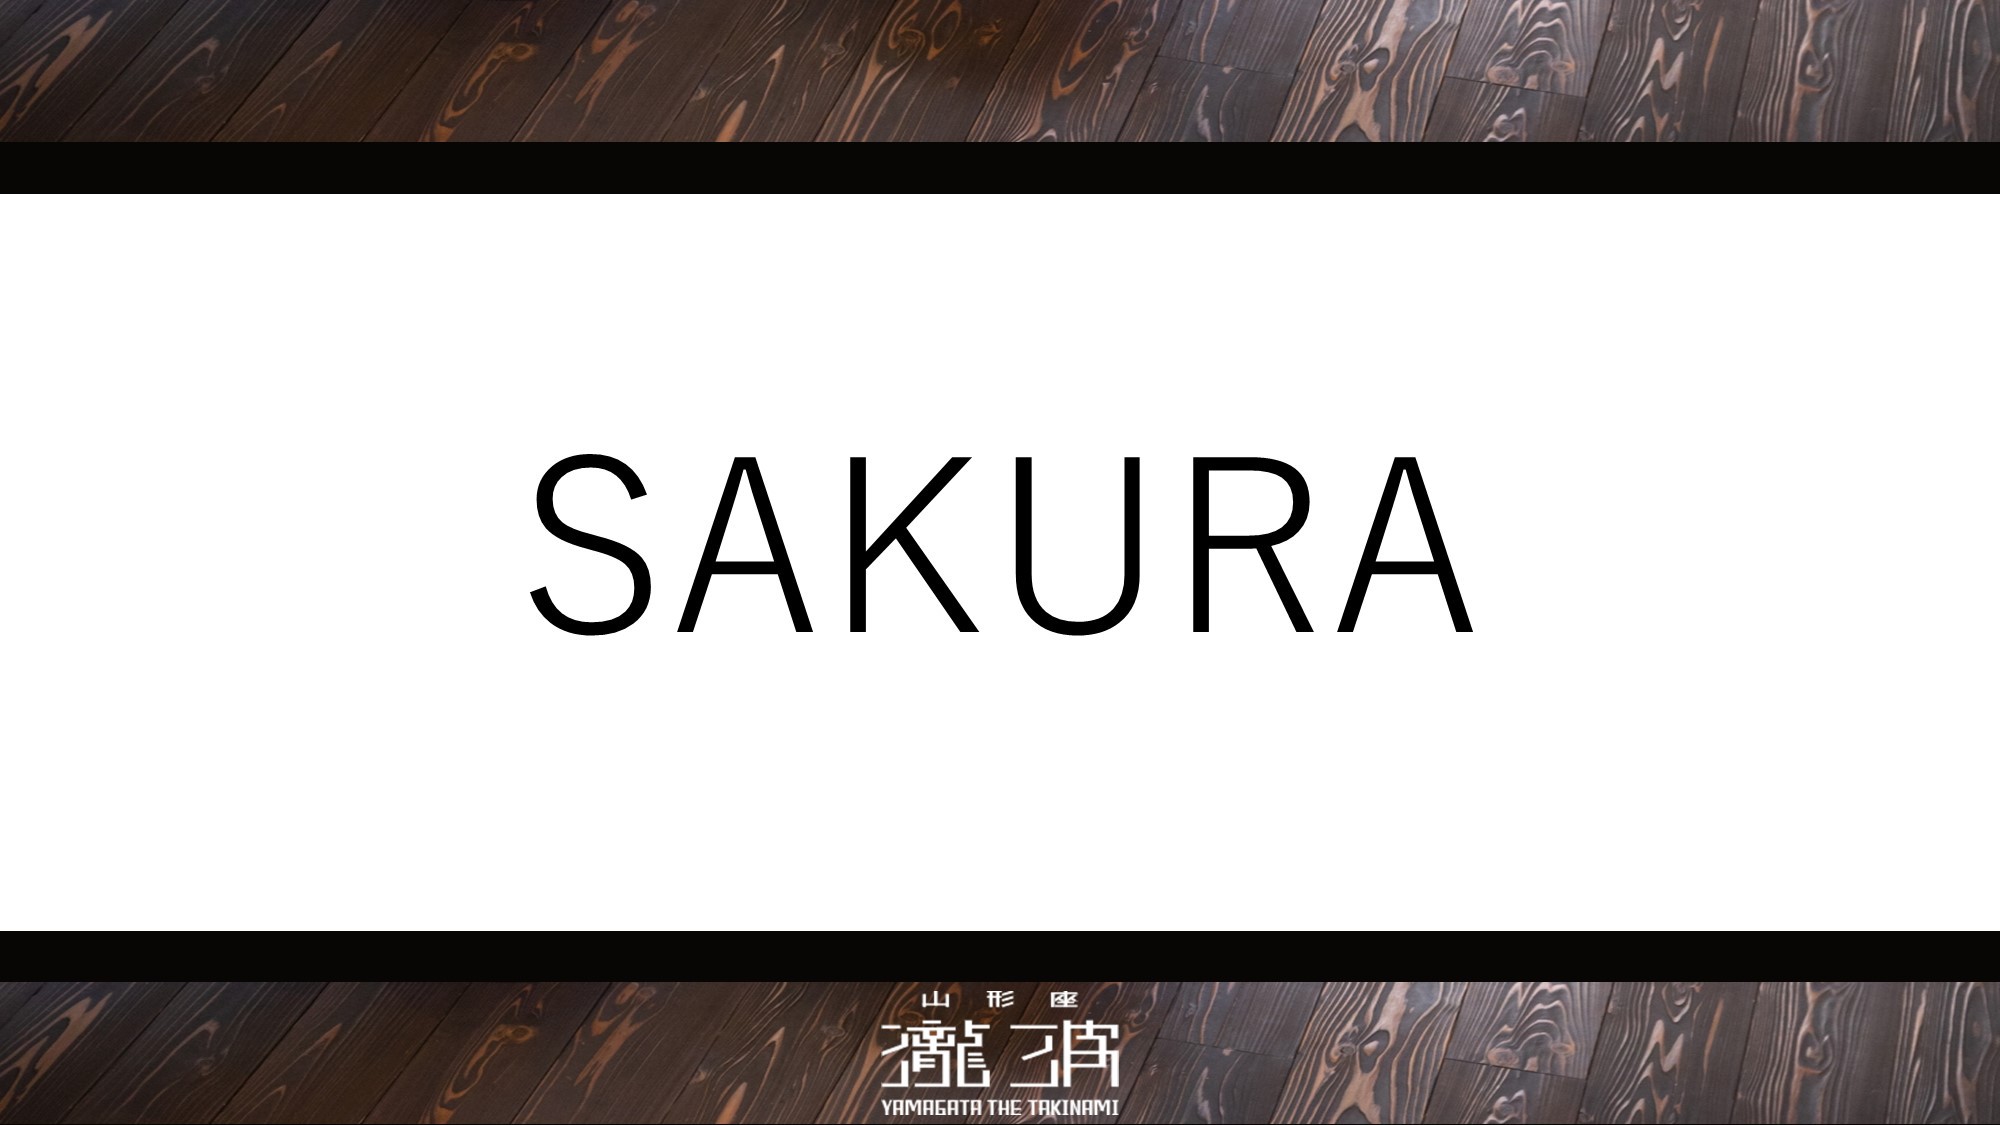 1階2階各3室の全6室、サクラが咲き誇る様など自然が織りなす景観を望むことができる「SAKURA」